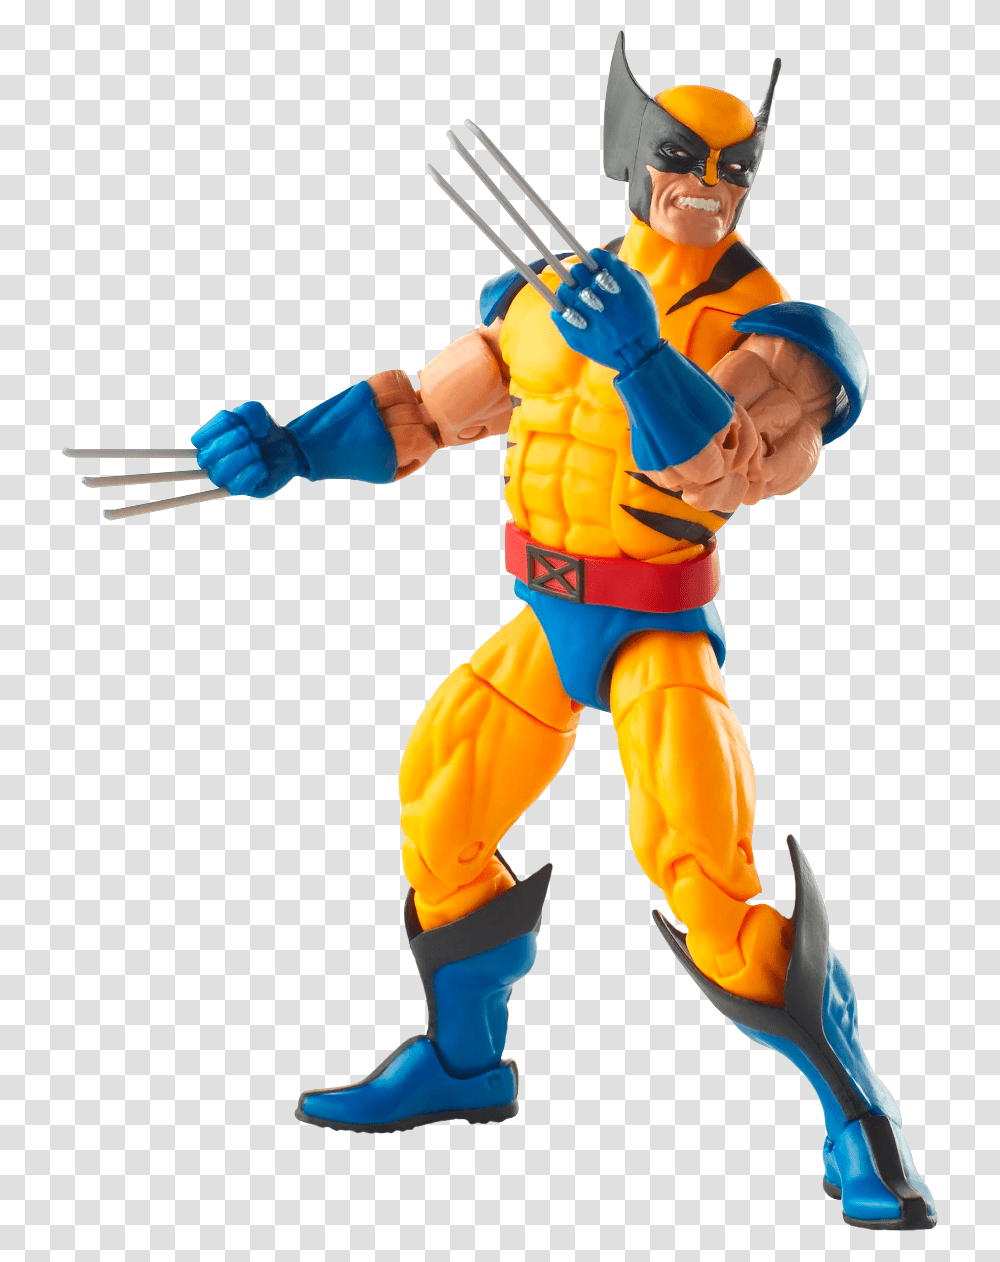 Marvel Legends Wolverine Vs Sabretooth, Person, Human, Figurine, Hand Transparent Png